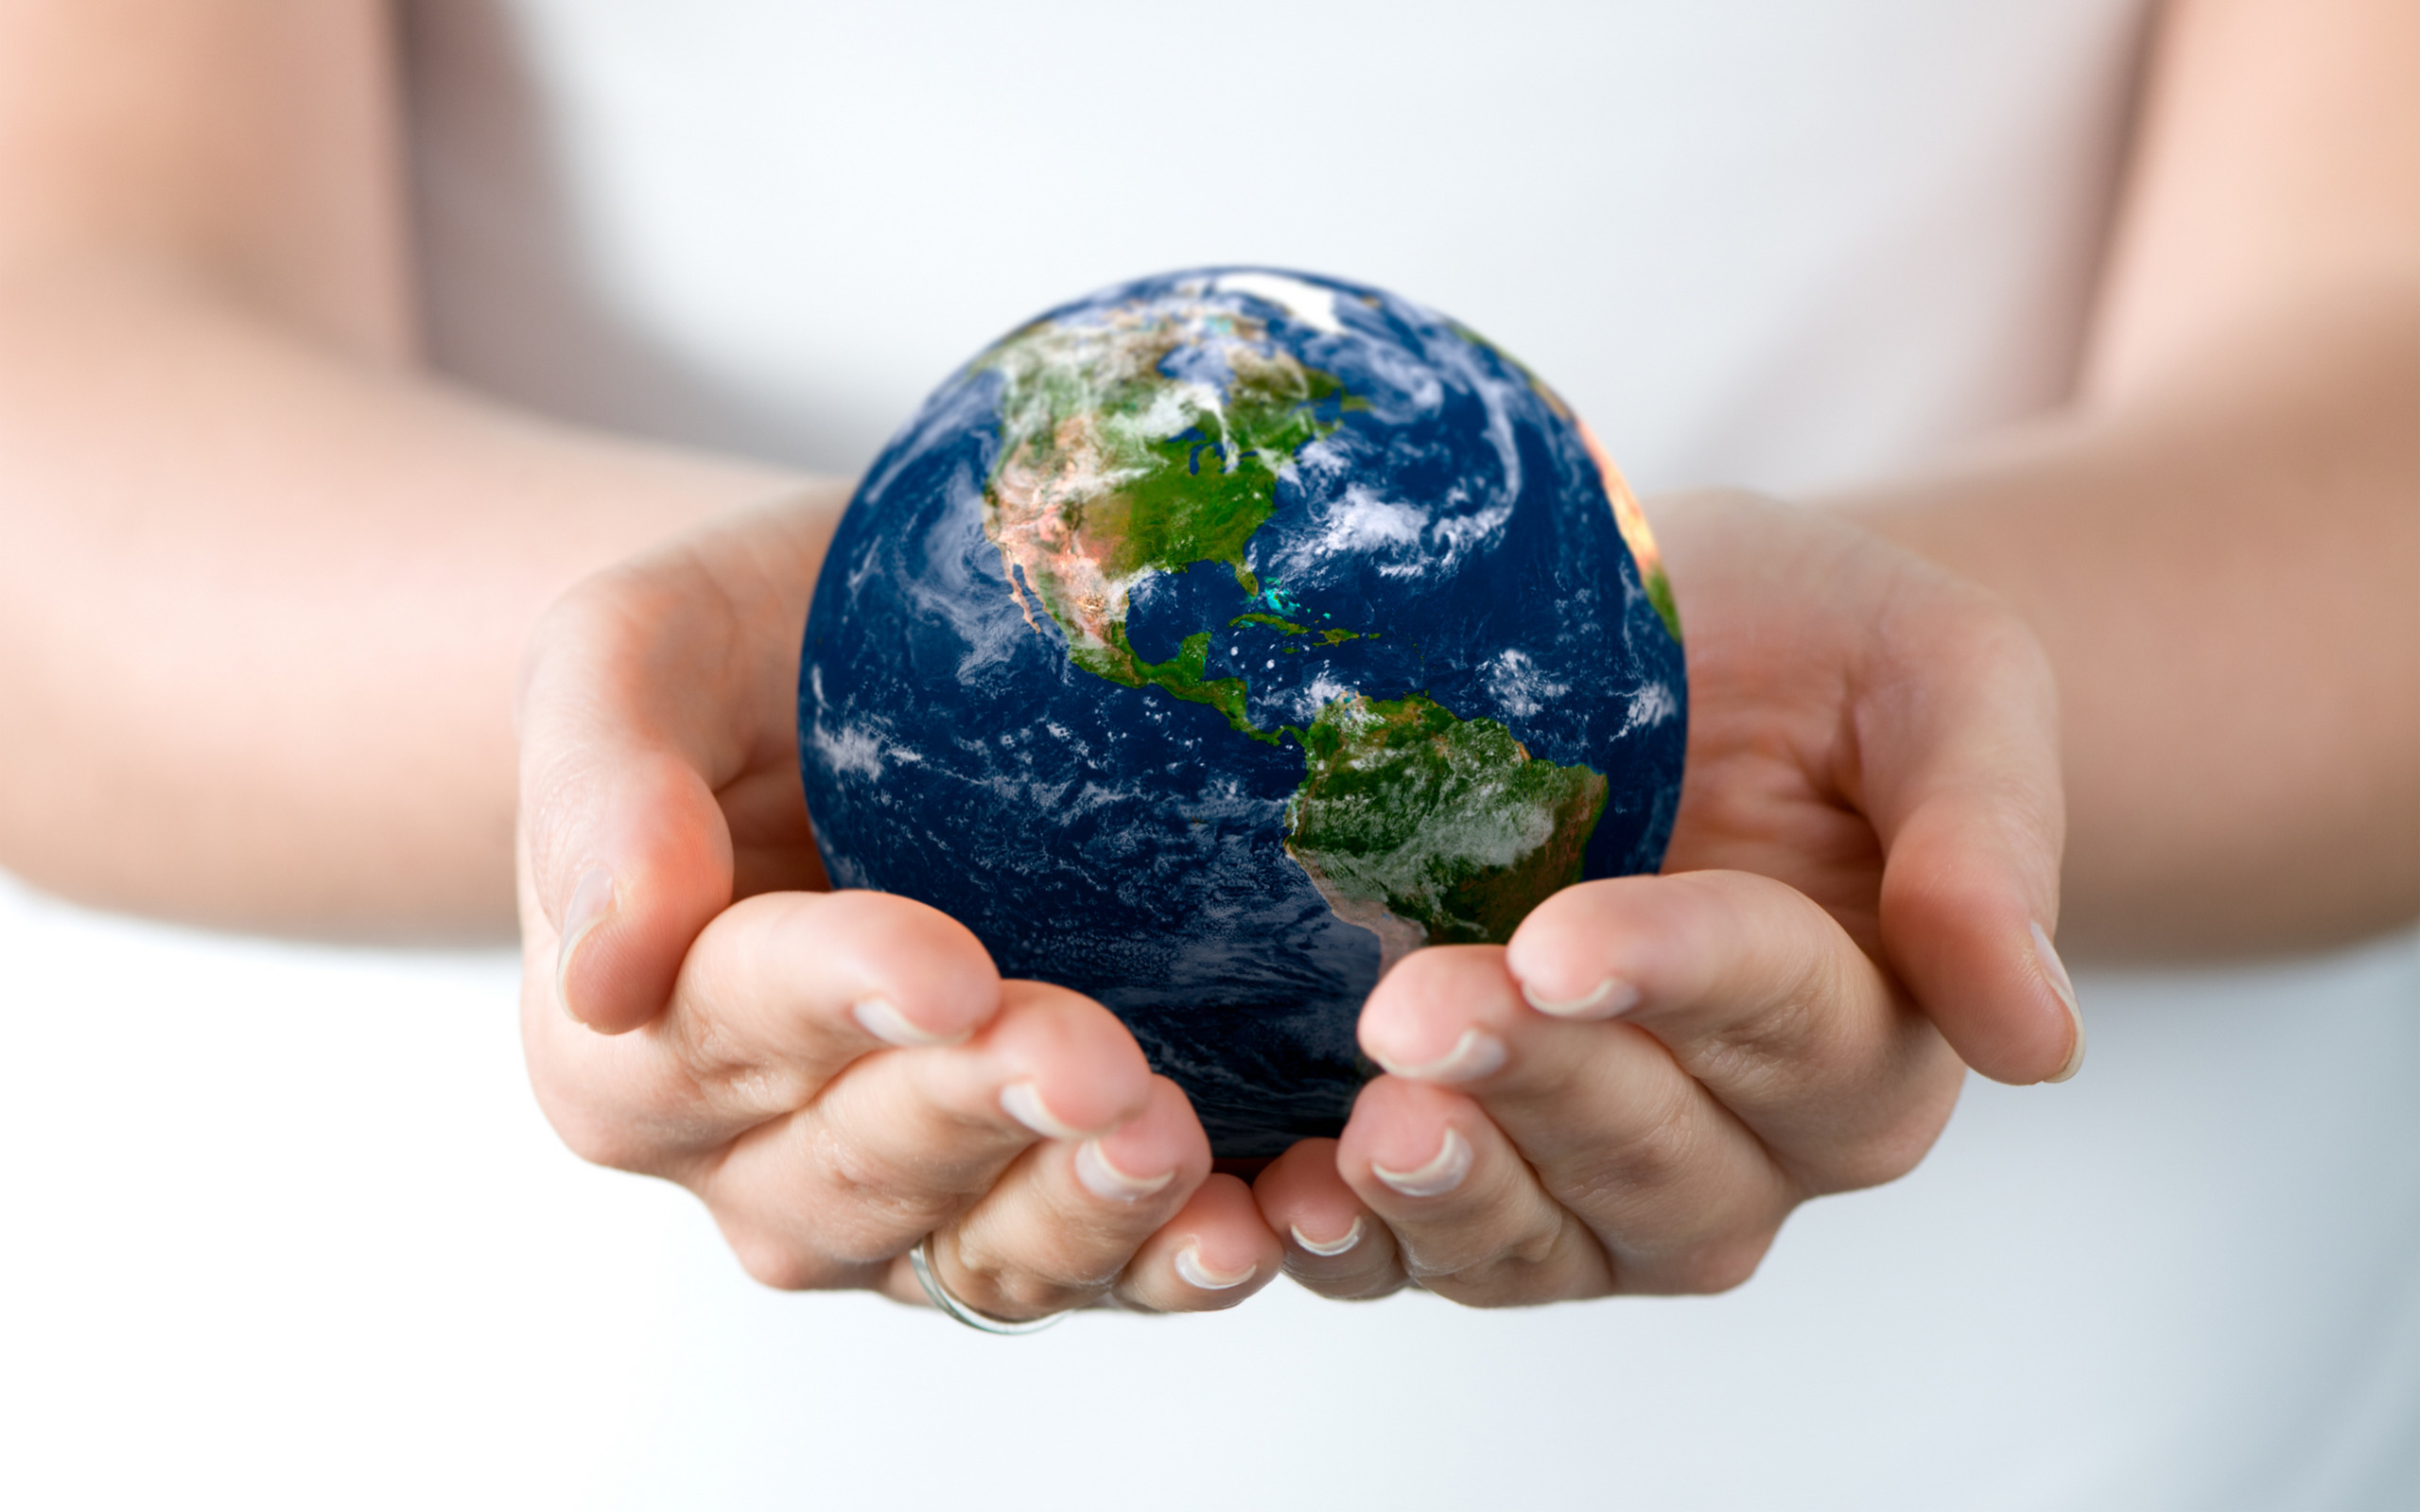 Как открыть мир в земли. Экология земля в руках. Защита природы. Экологический земной шар. Будущее планеты в наших руках.